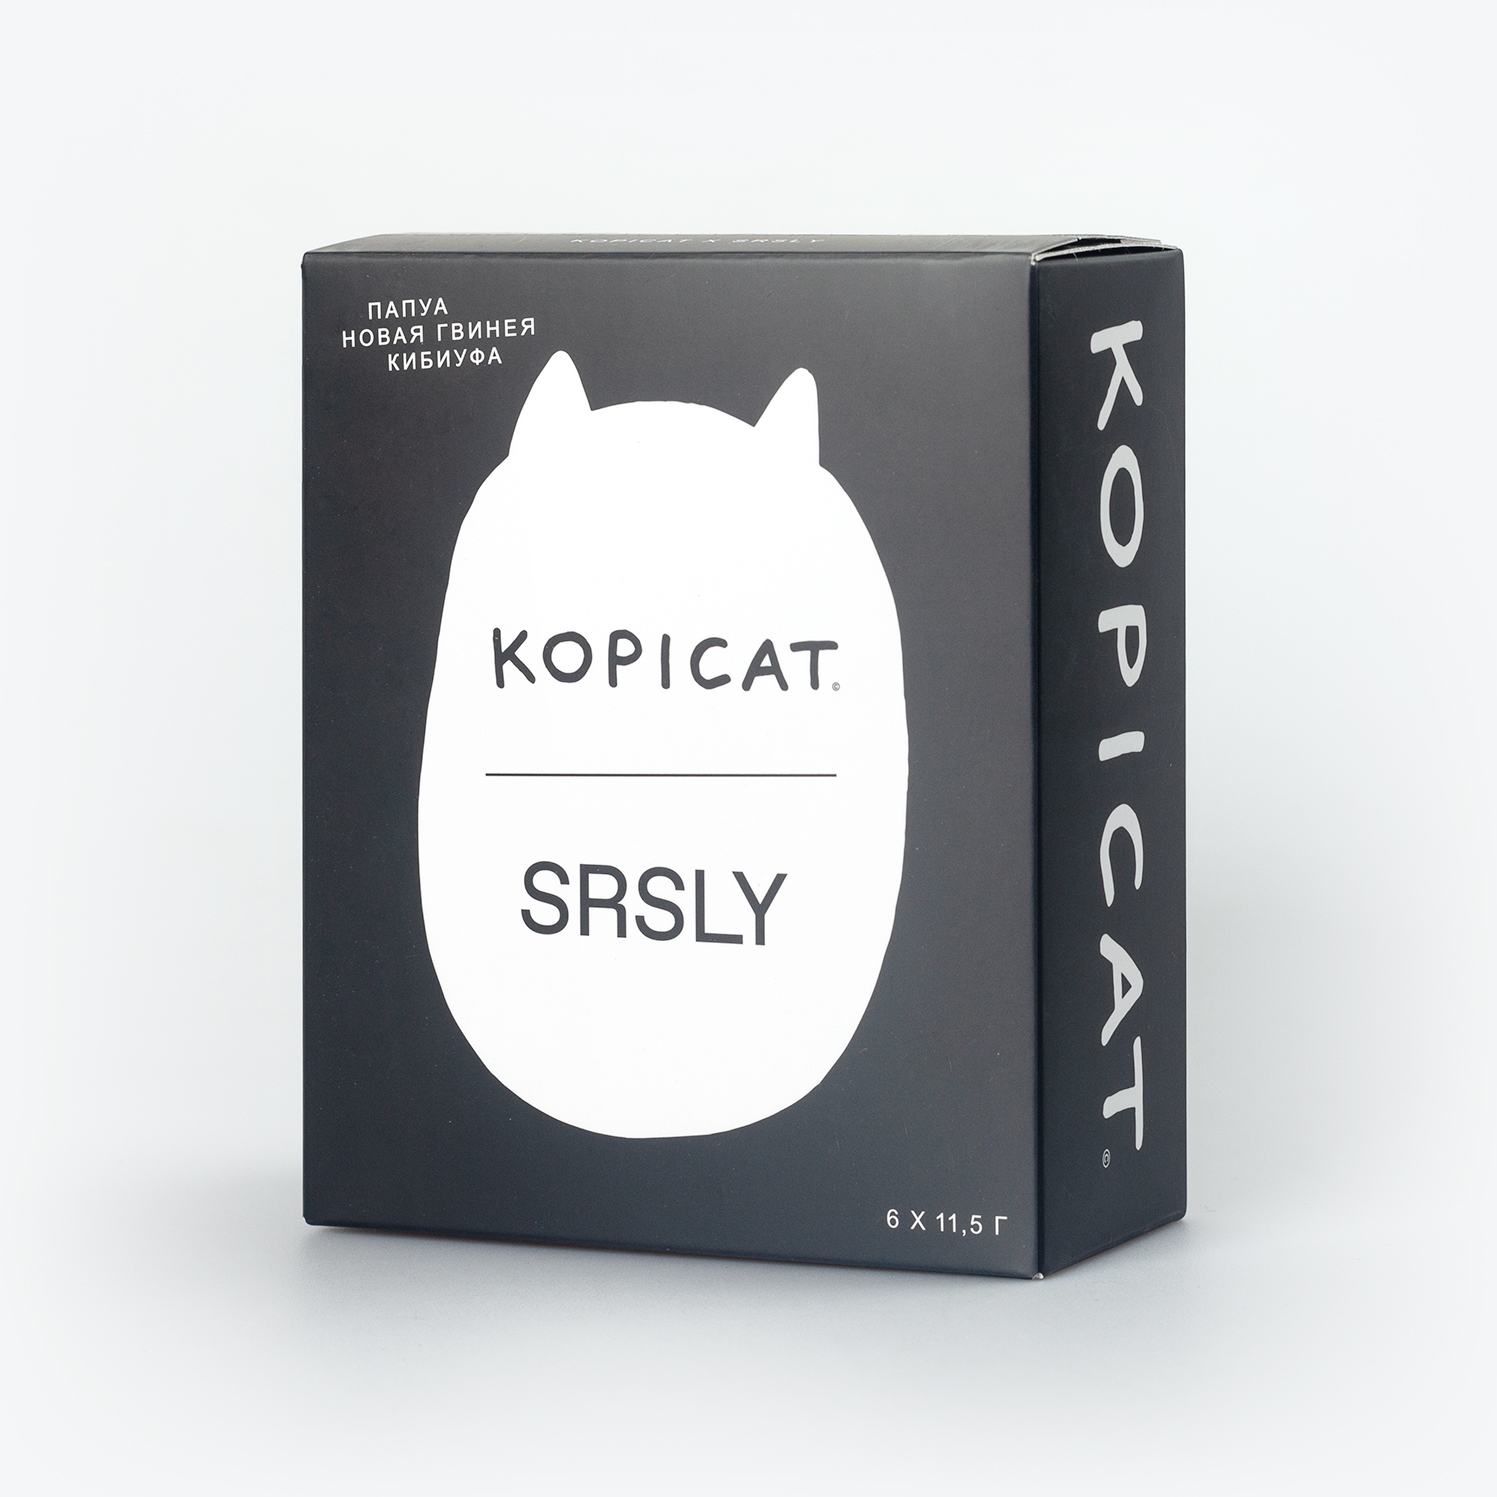 Онлайн-издание SRSLY выпустило кофейные дрипы совместно с Kopicat (фото 1)